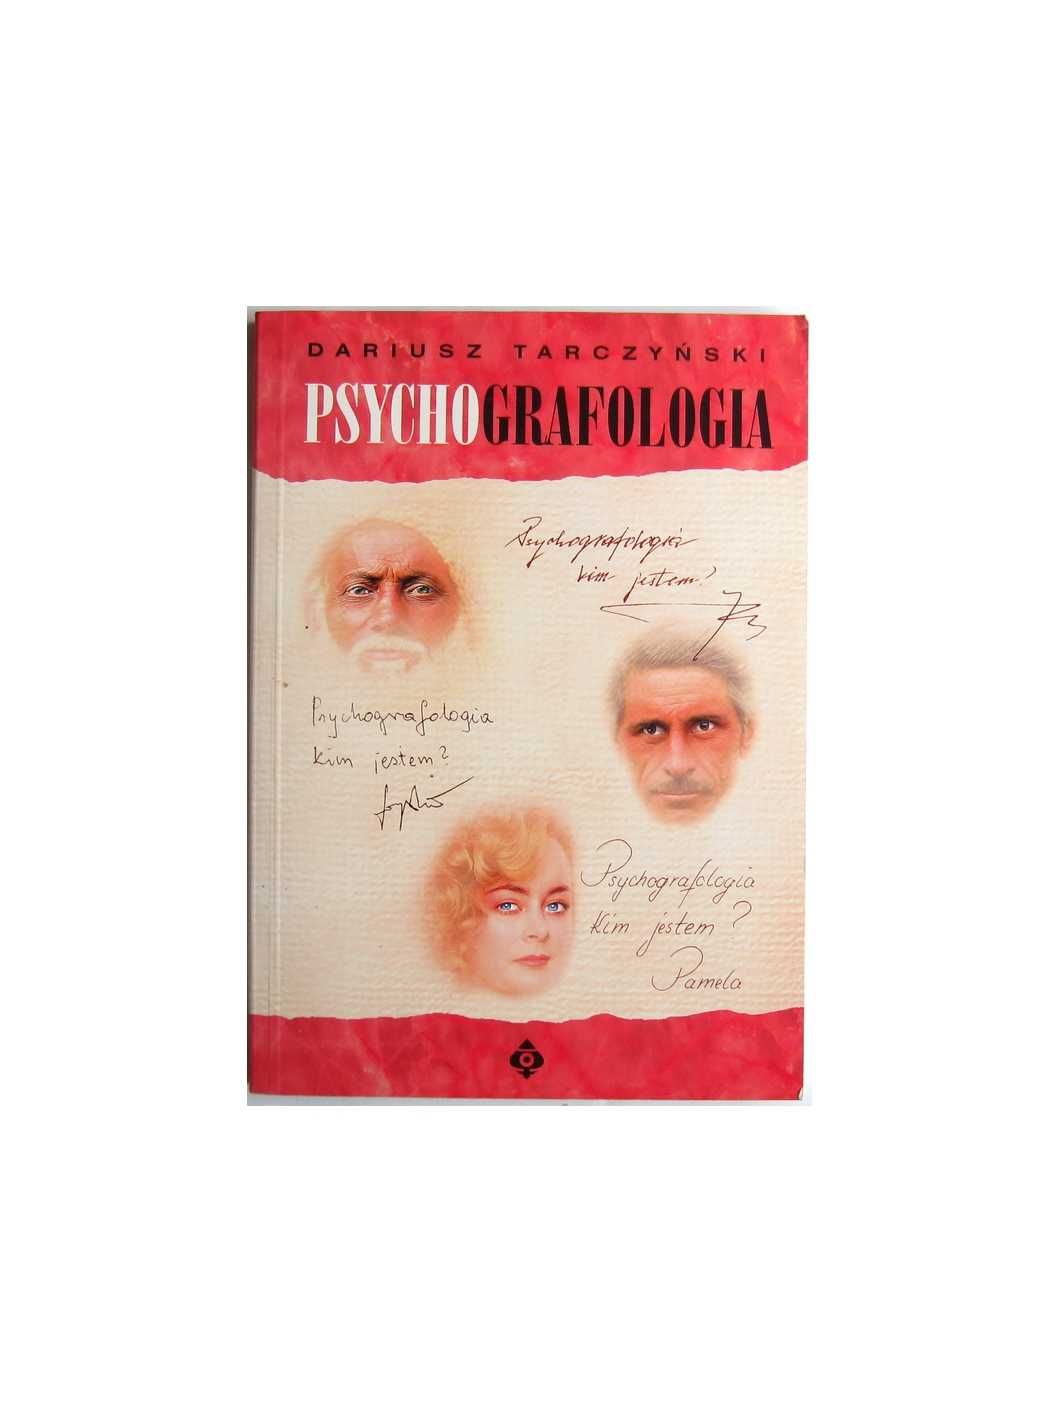 Psychografologia – Dariusz Tarczyński